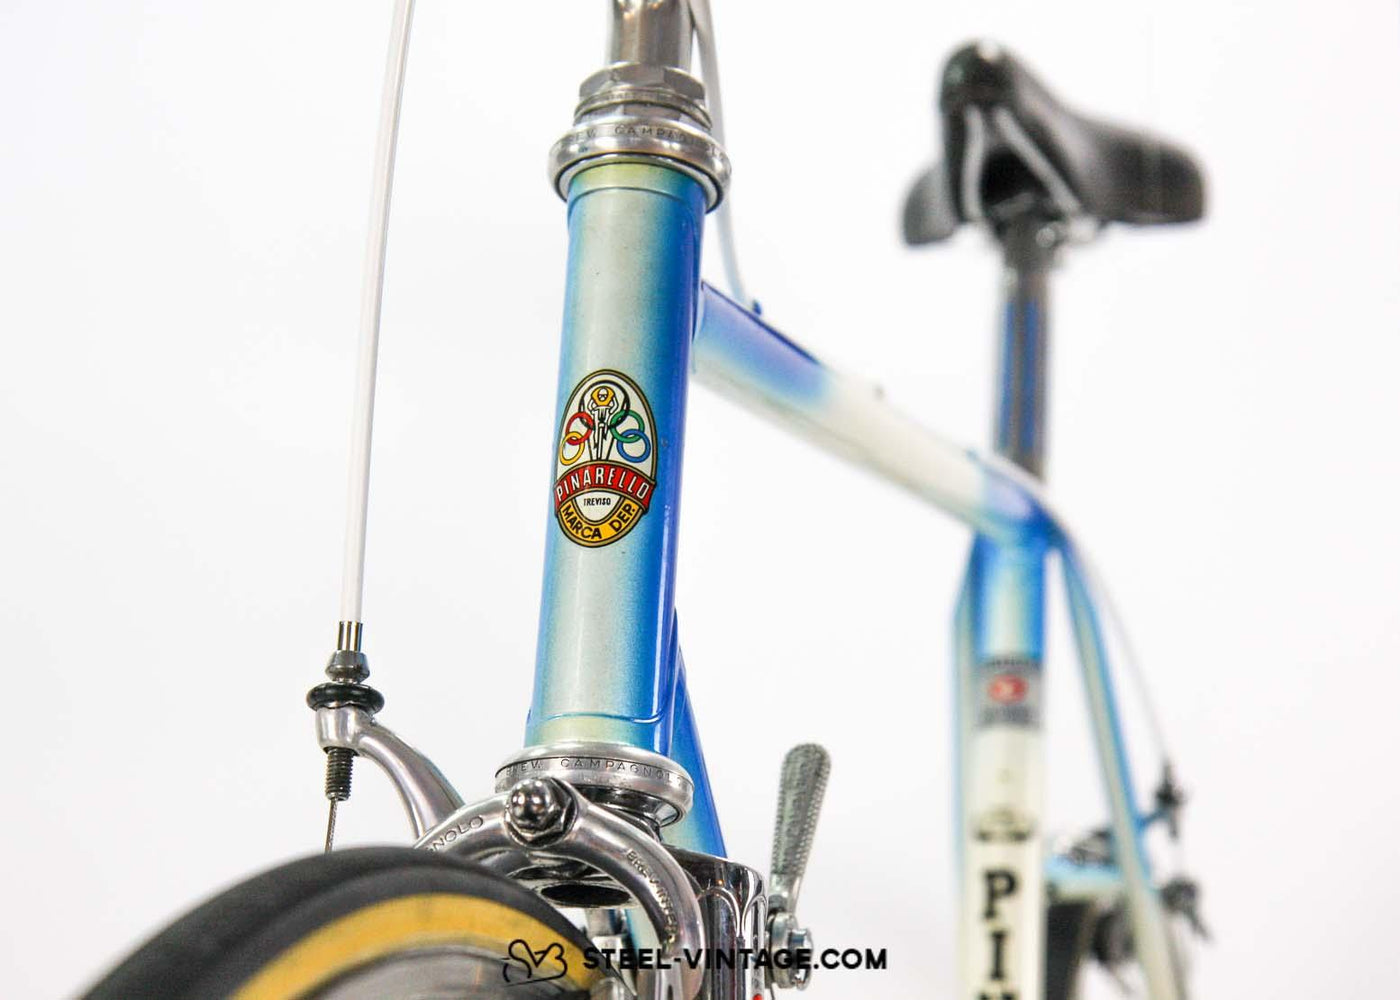 Pinarello Super Record Road Bike 1980s - Steel Vintage Bikes